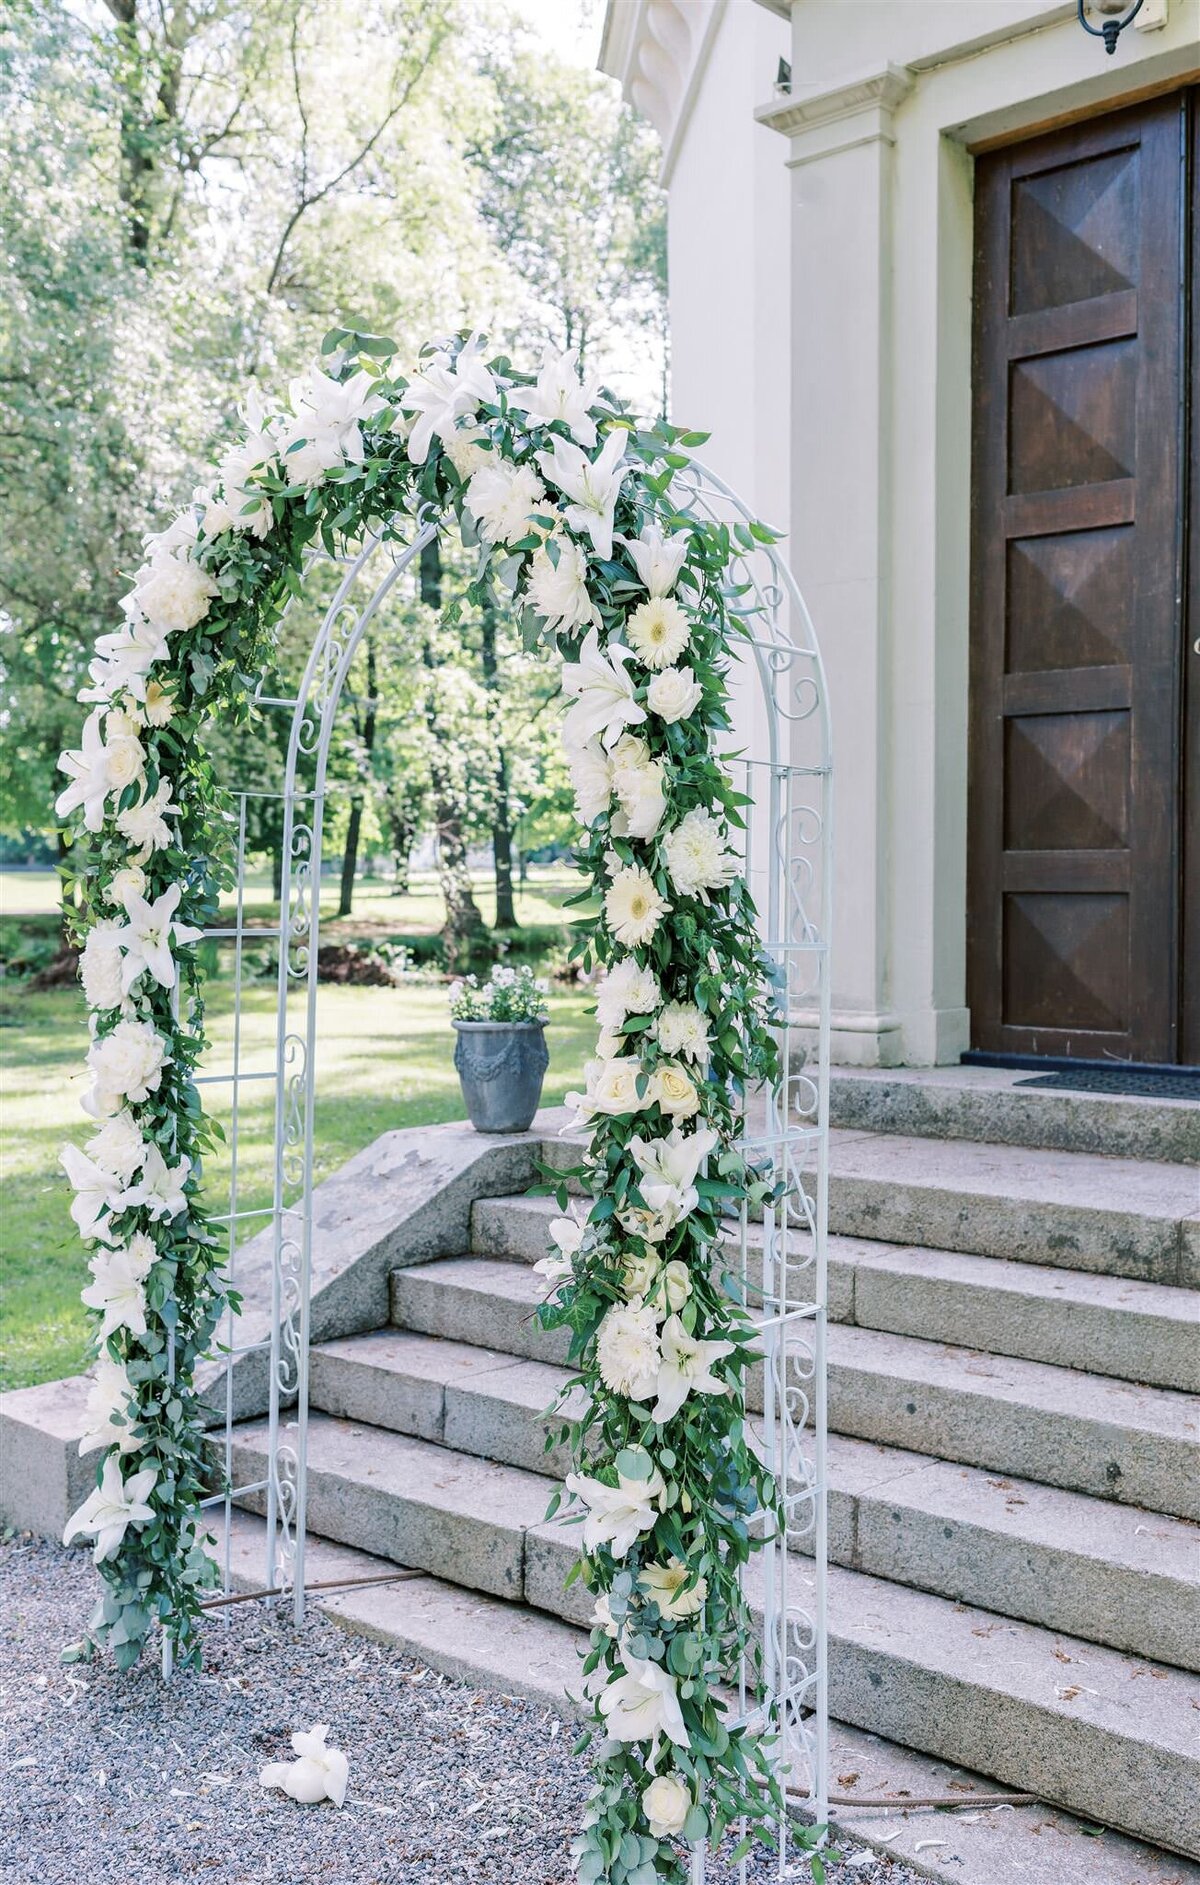 Destination Wedding Photographer Anna Lundgren - helloalora Rånäs Slott chateau wedding in Sweden outdoor ceremony wedding flower arch in the castle garden